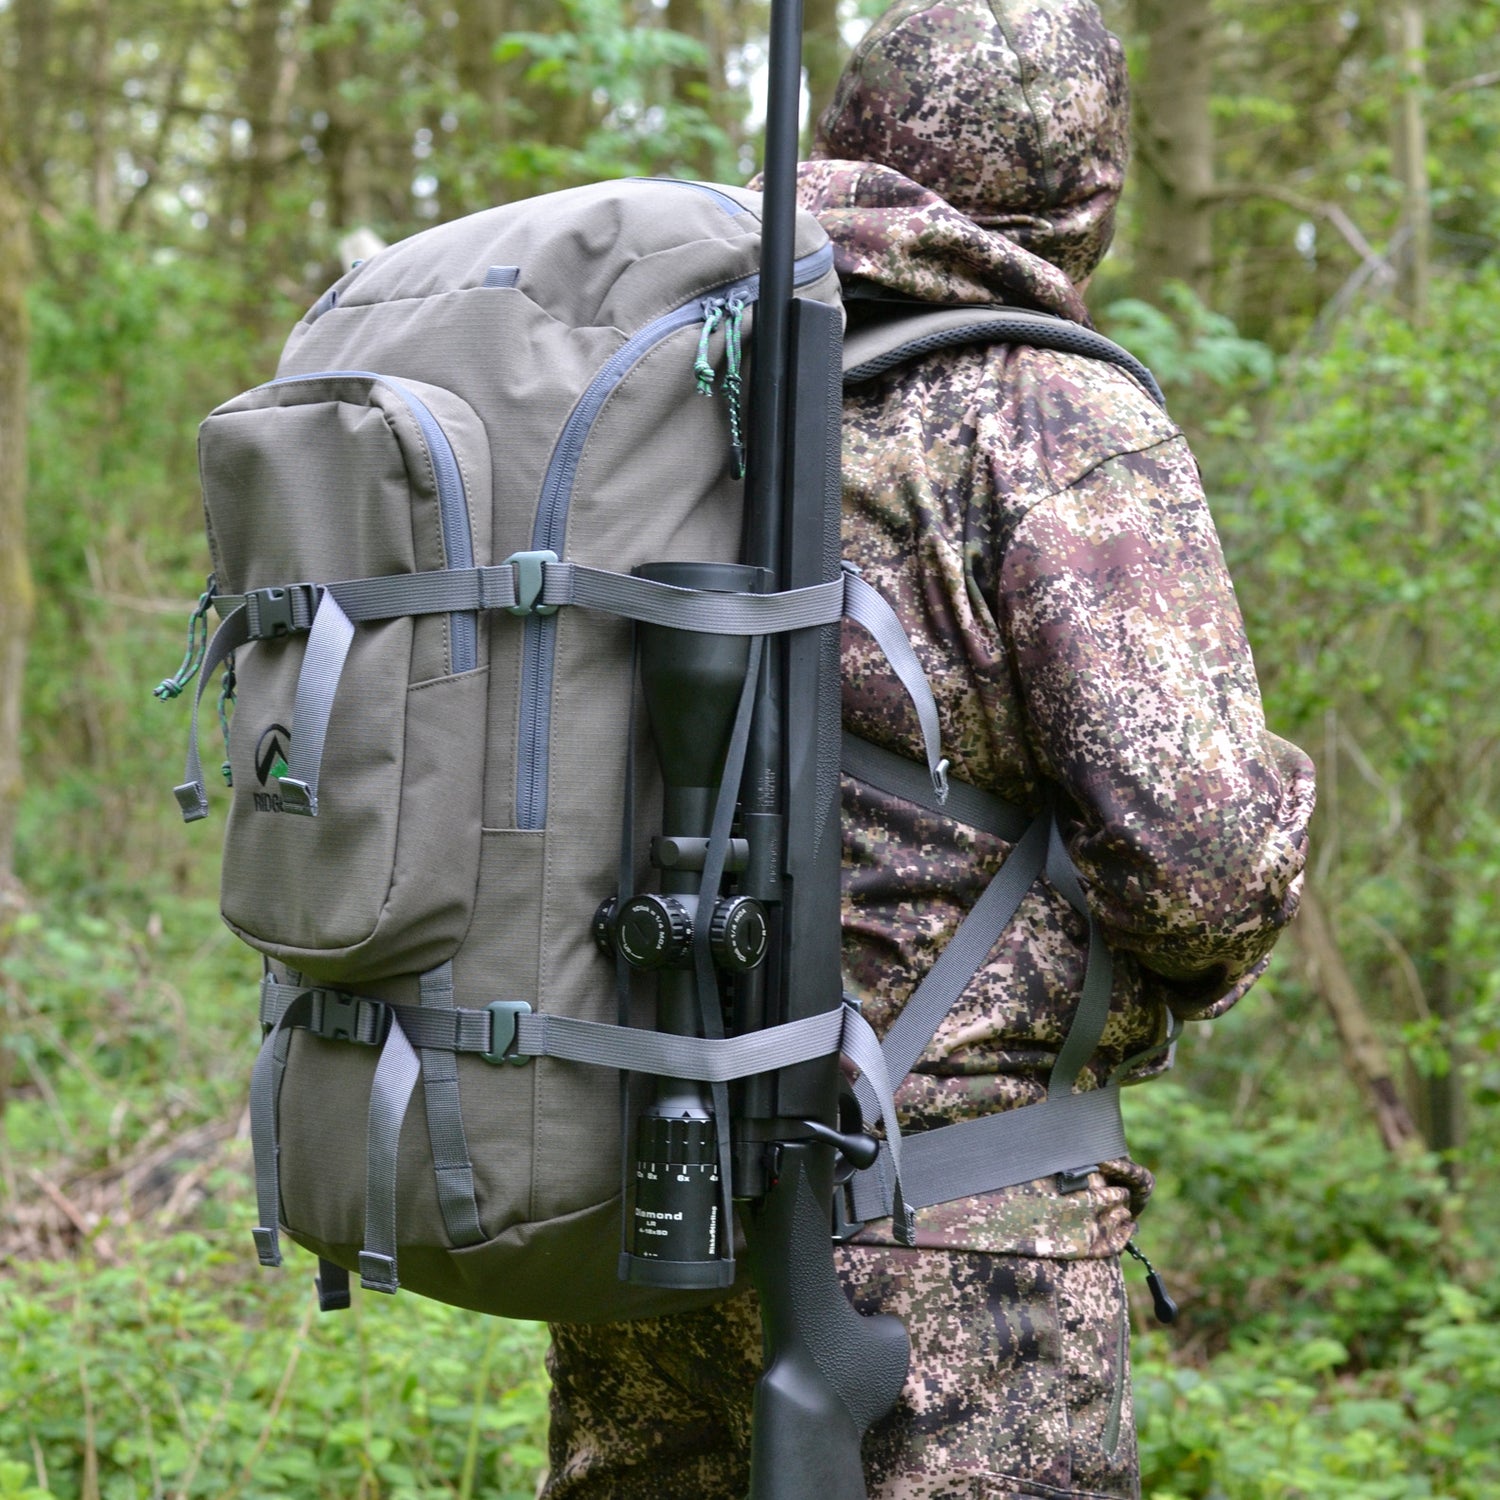 Ridgeline-35L-Day-Hunter-Backpack